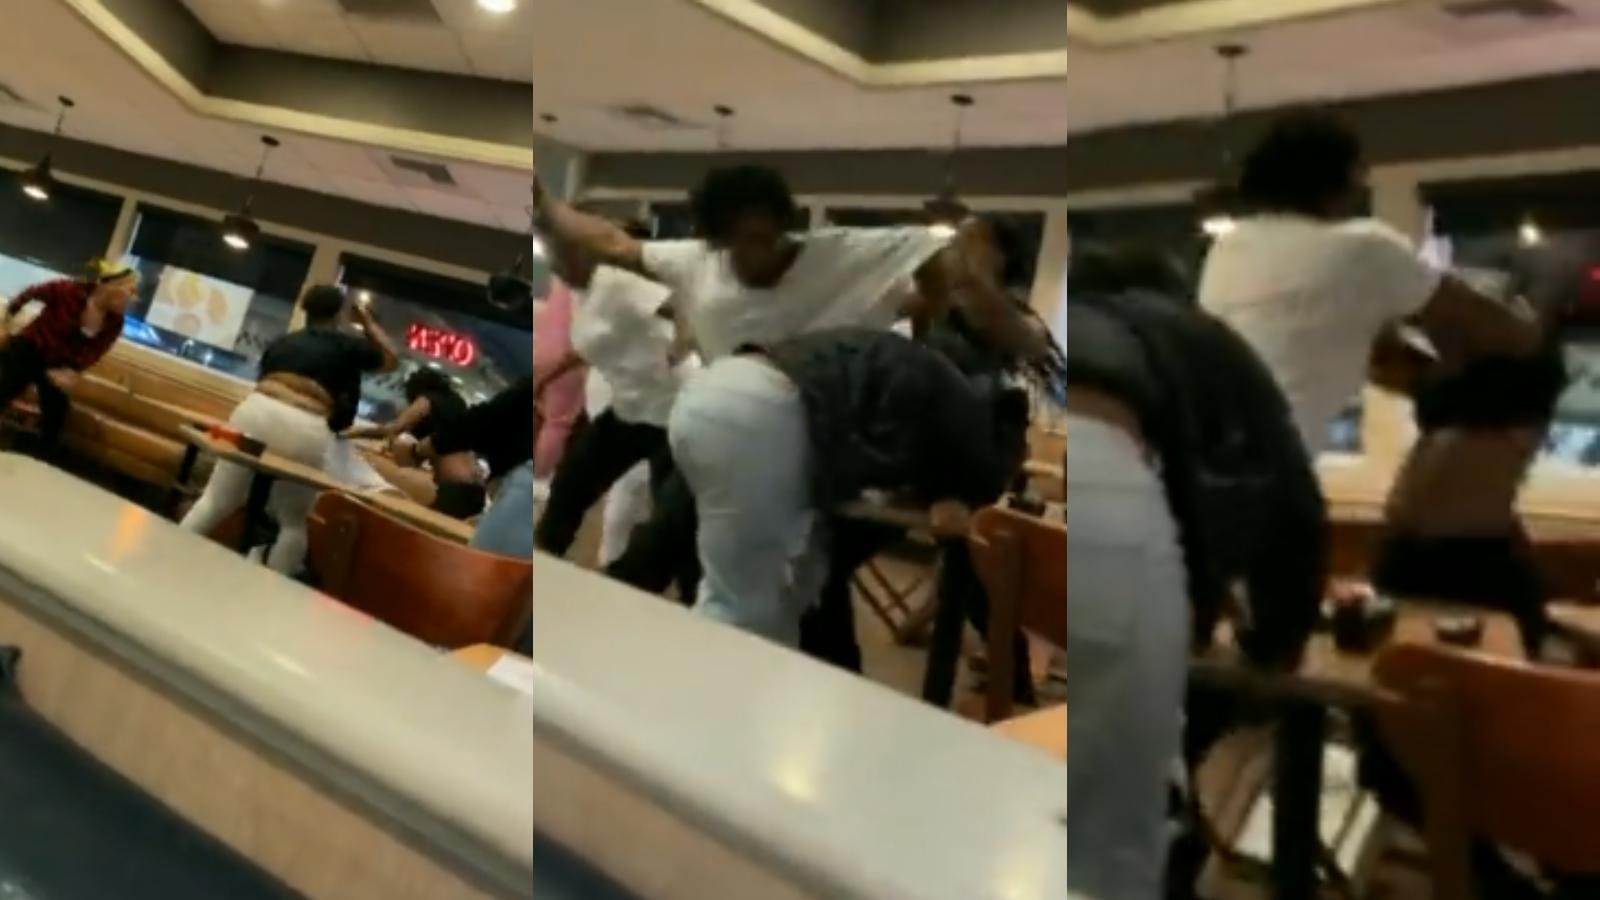 man fights multiple women in fight video